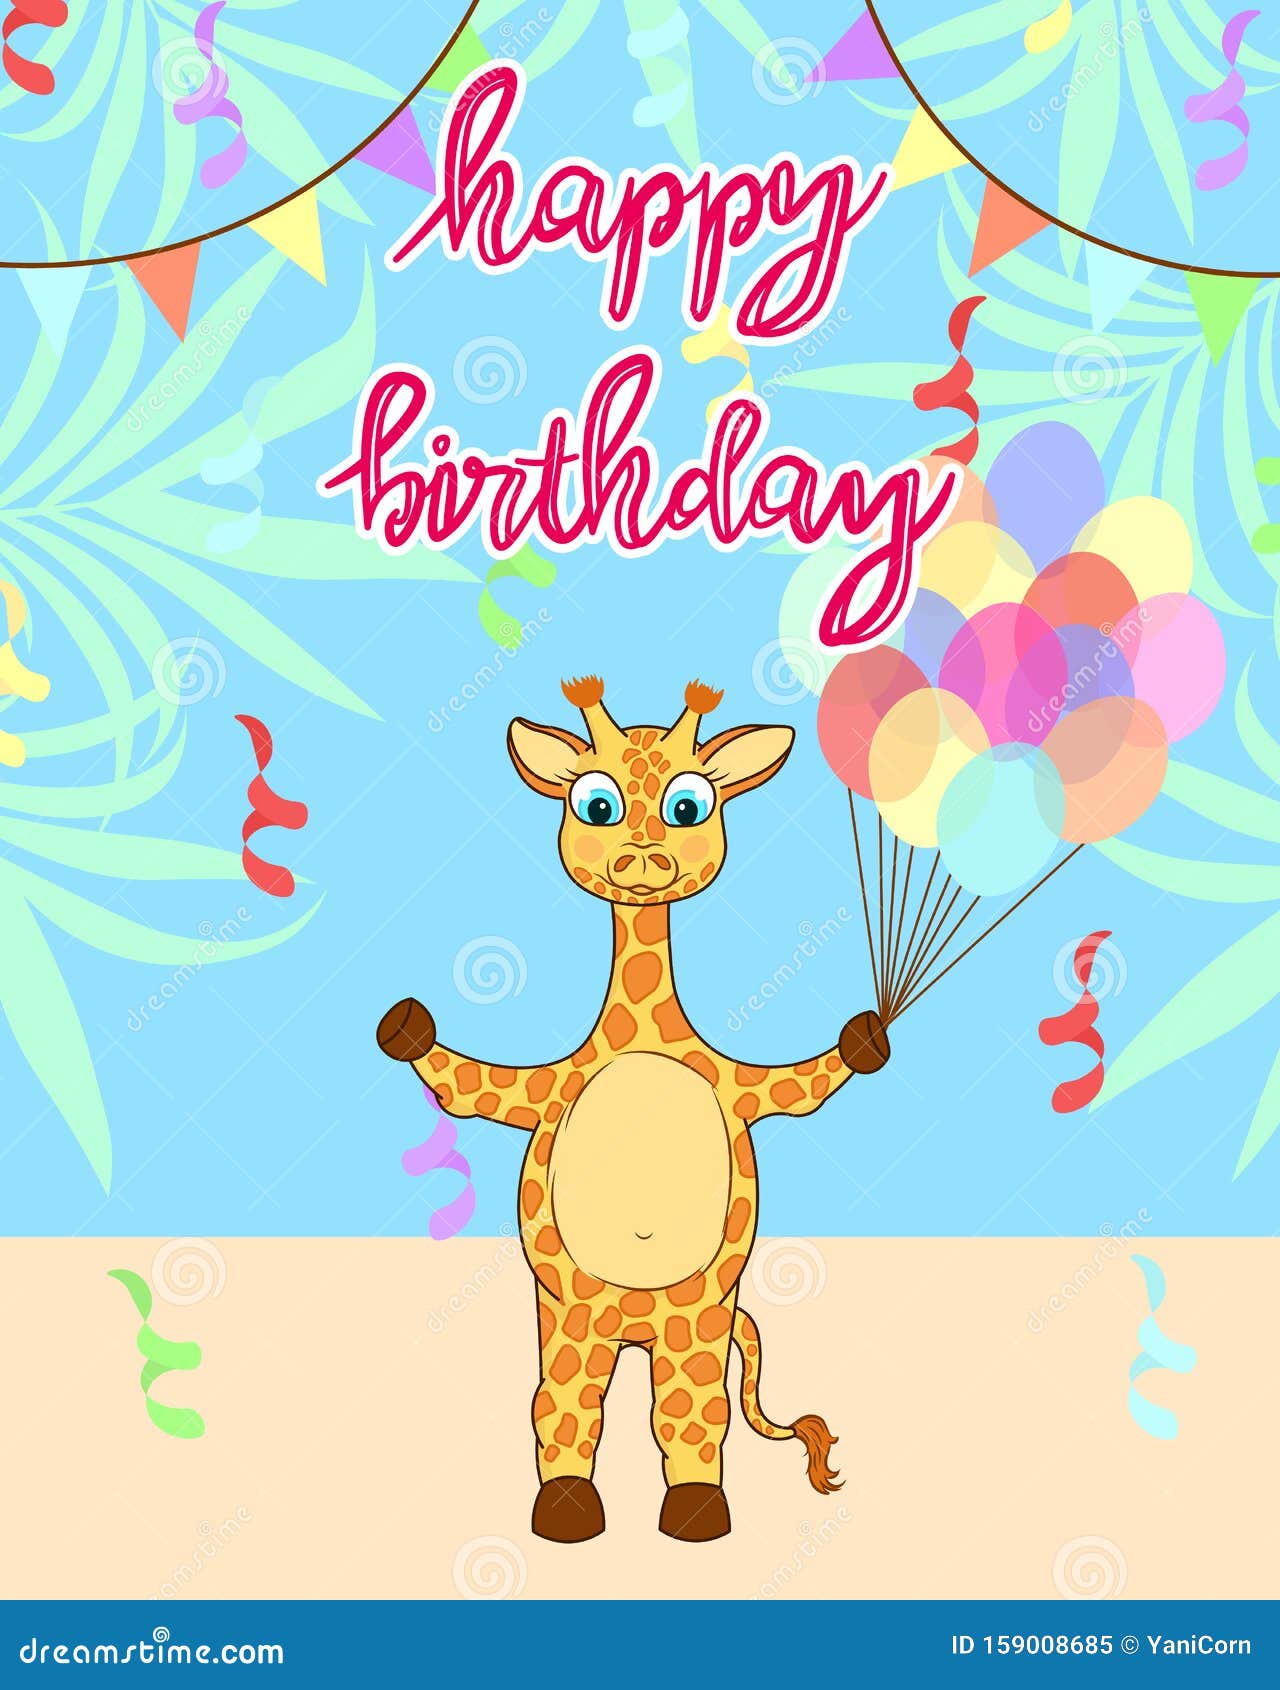 Carte D Anniversaire De La Petite Girafe Carte De Voeux D Anniversaire Mignonne Avec Girafe Africaine Ballons Colores Et Fond Illustration De Vecteur Illustration Du Giraffe Anniversaire